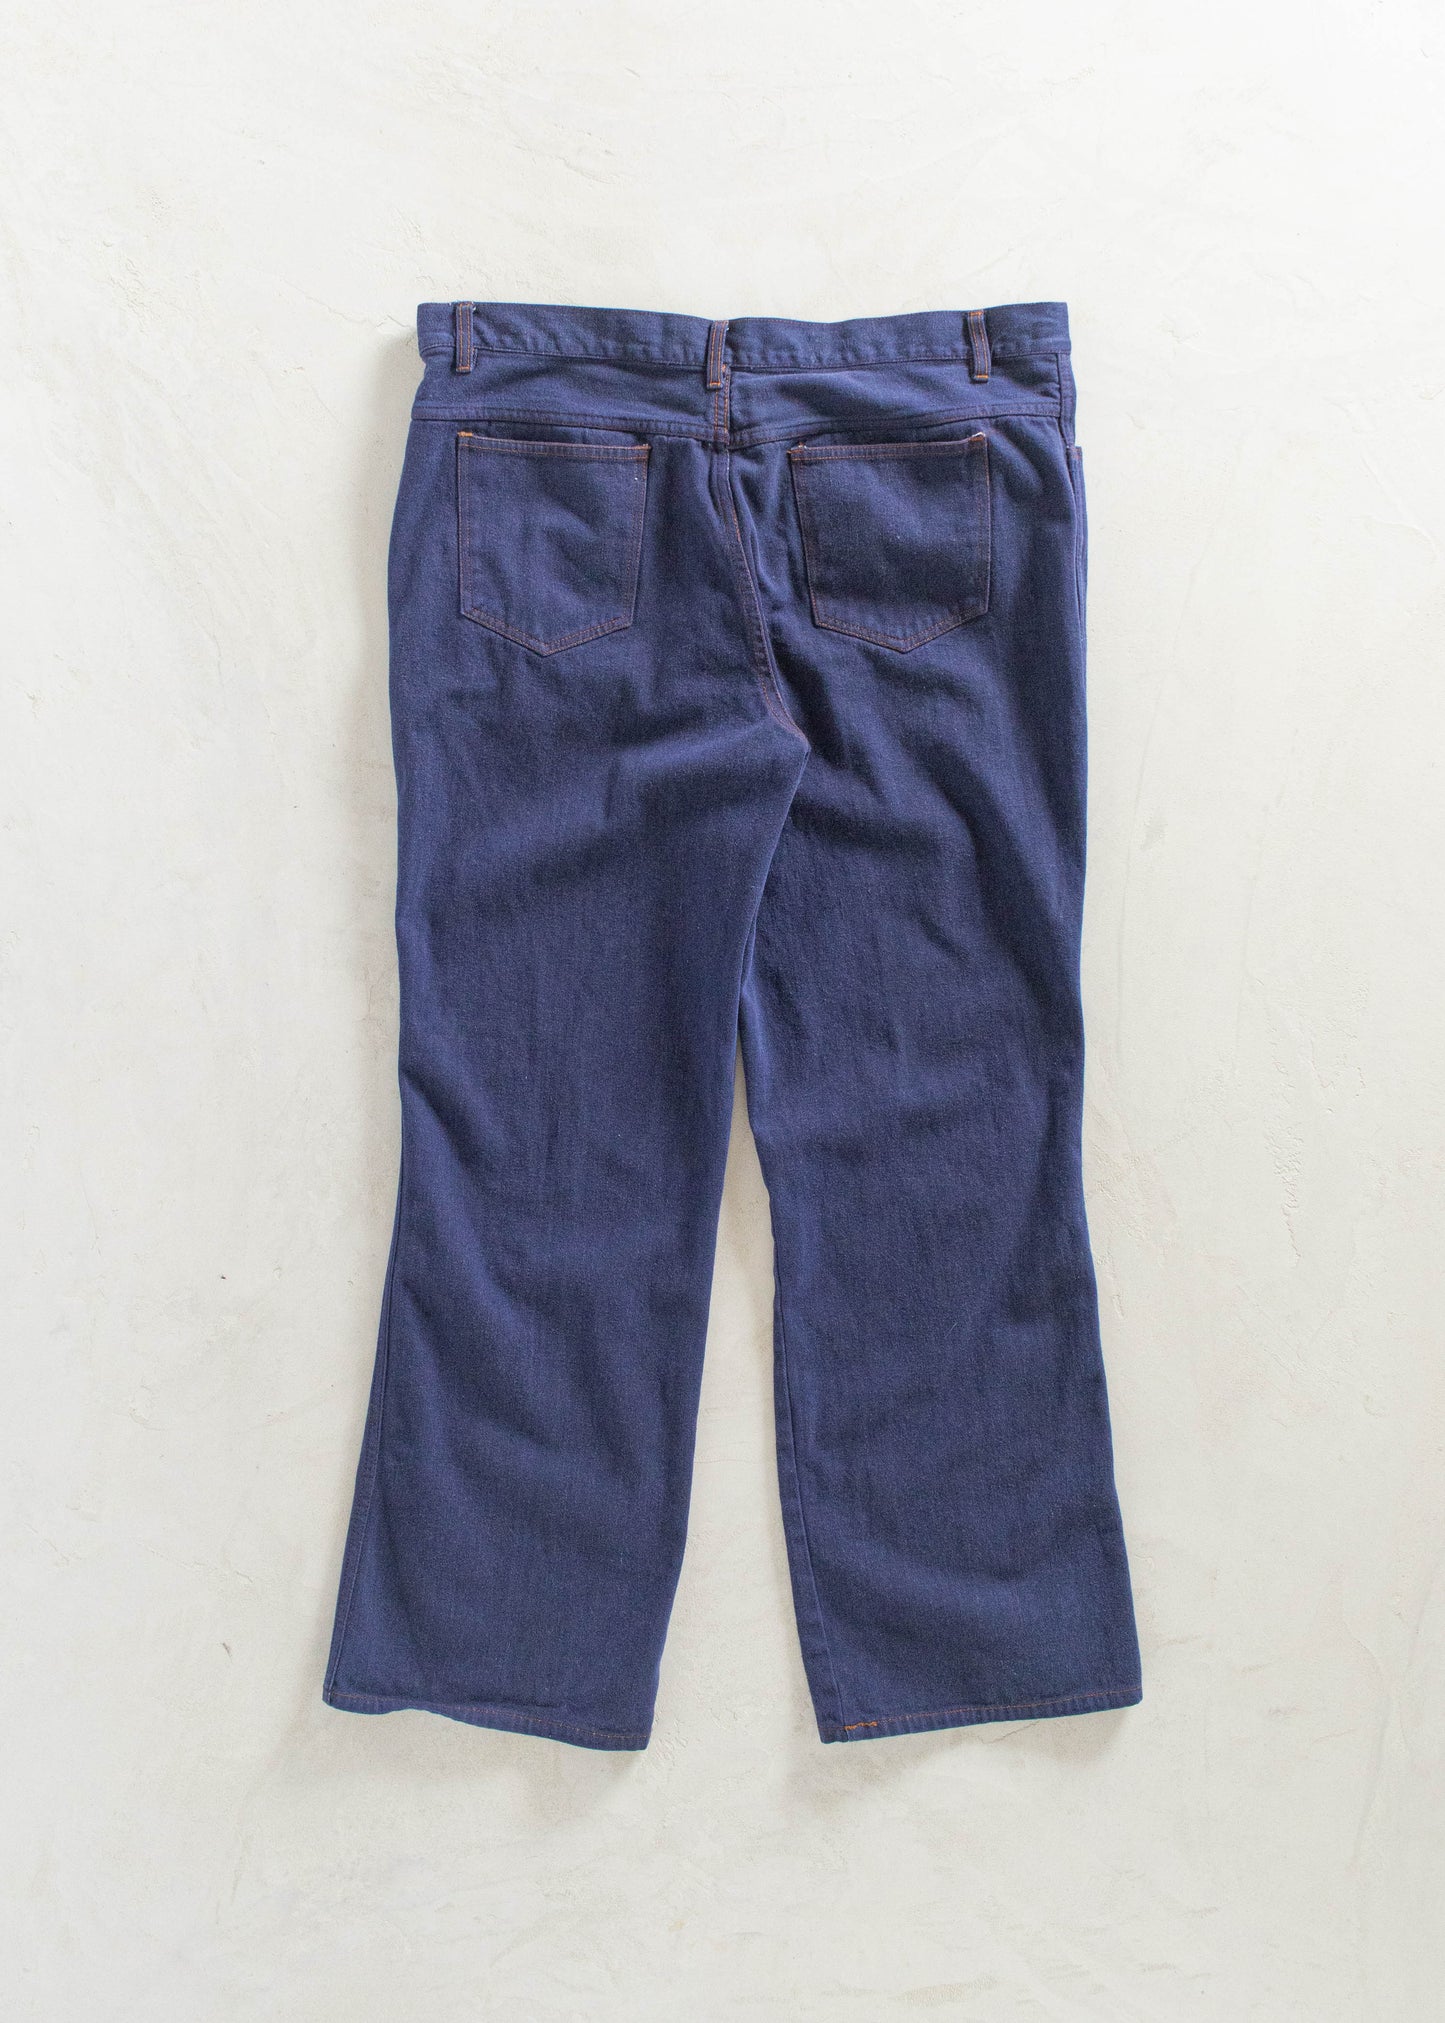 Vintage 1980s B.S.R Darkwash Flare Jeans Size Women's 36 Men's 38